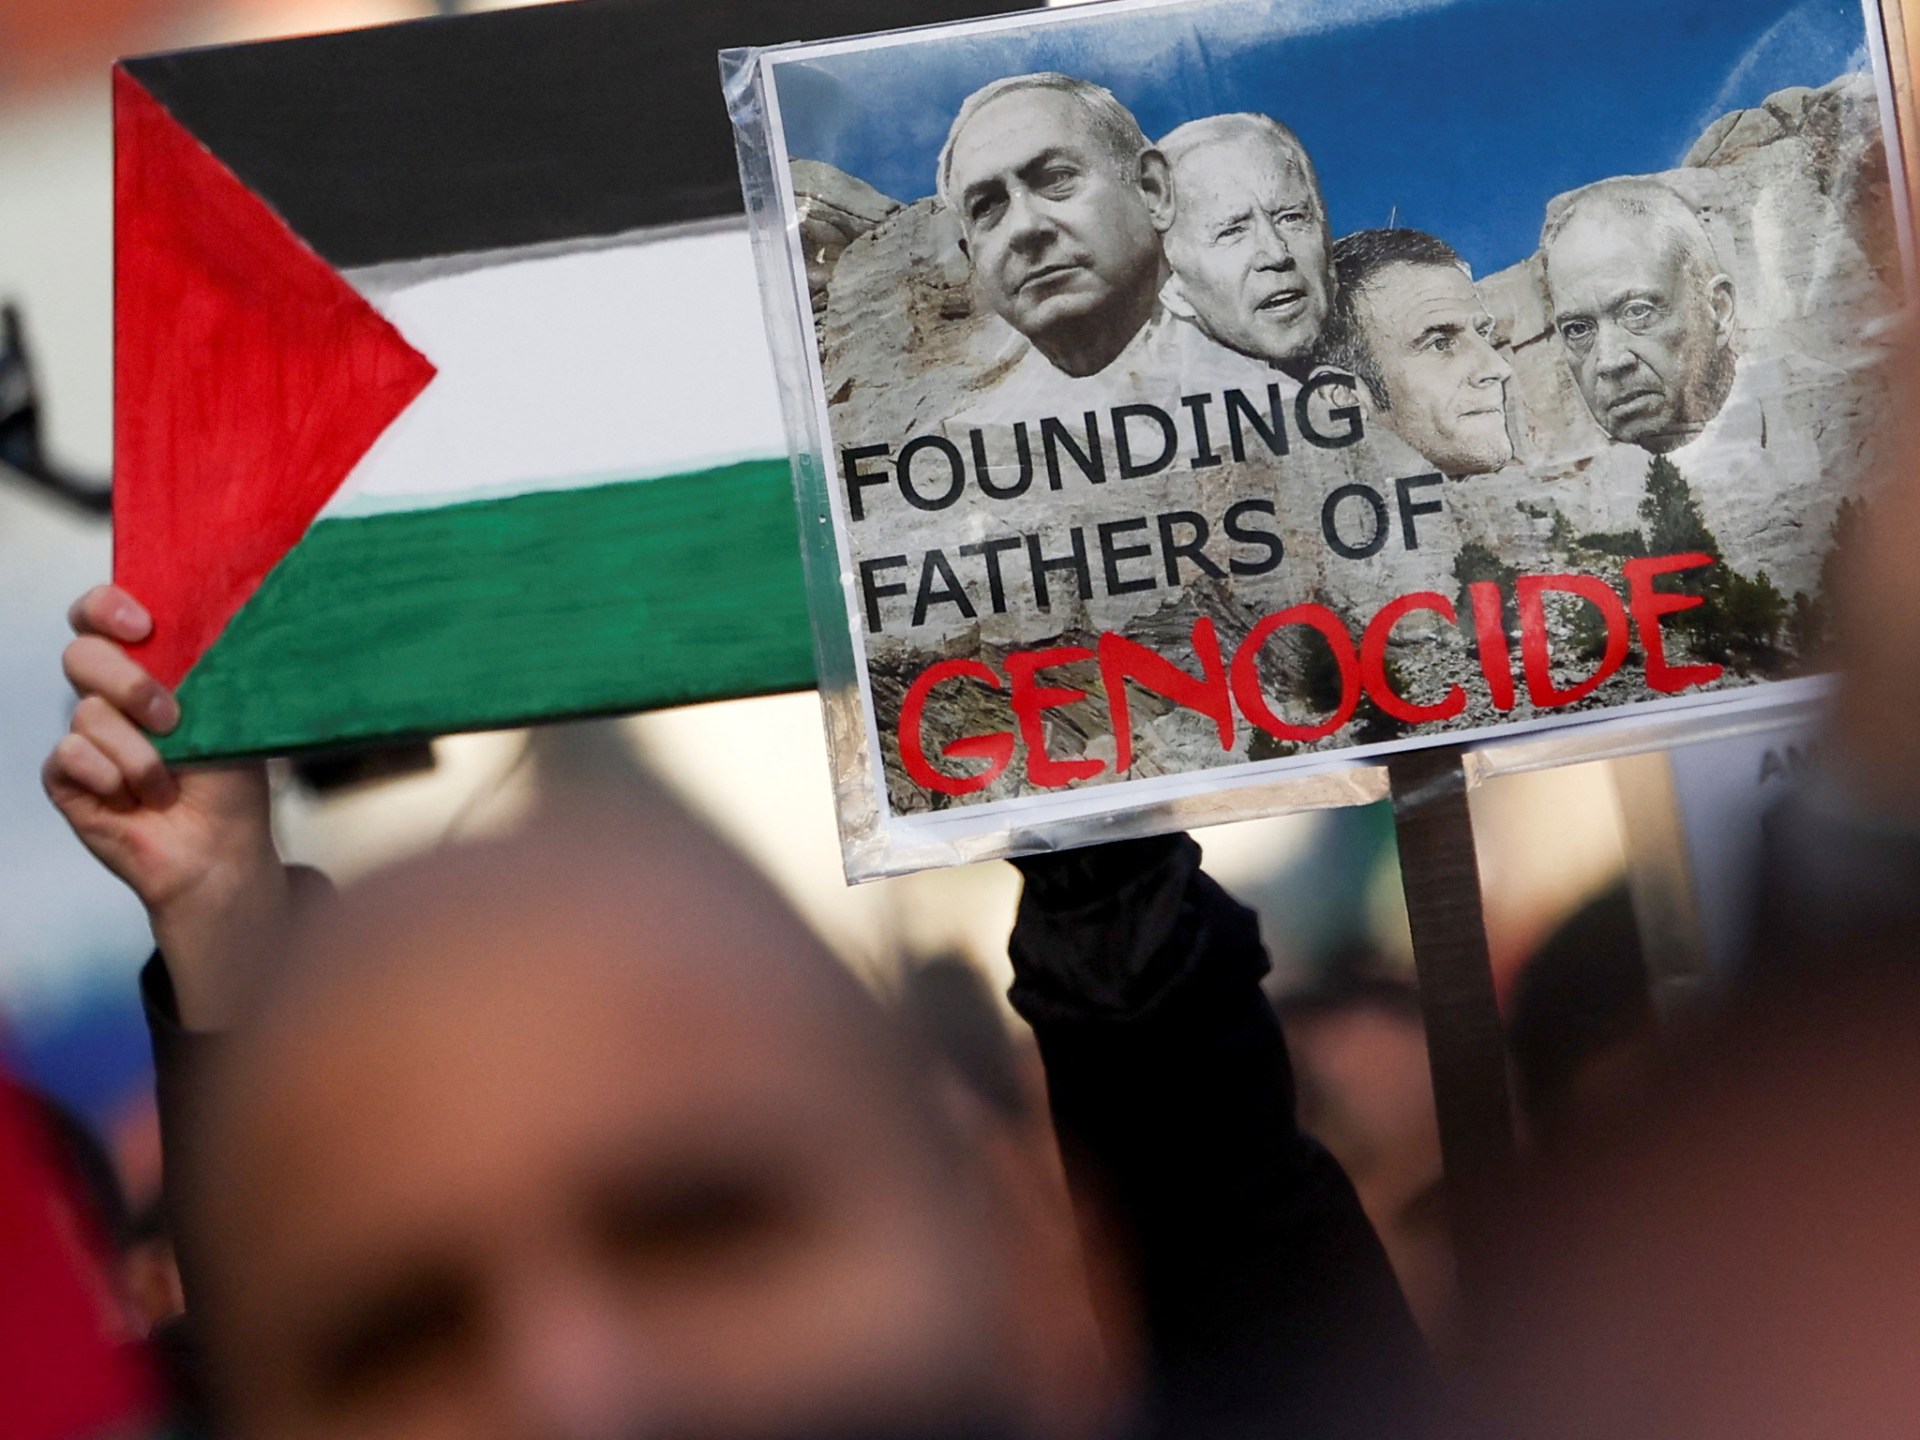 غزة بين “عقيدة بايدن” وخطة نتنياهو | سياسة – البوكس نيوز